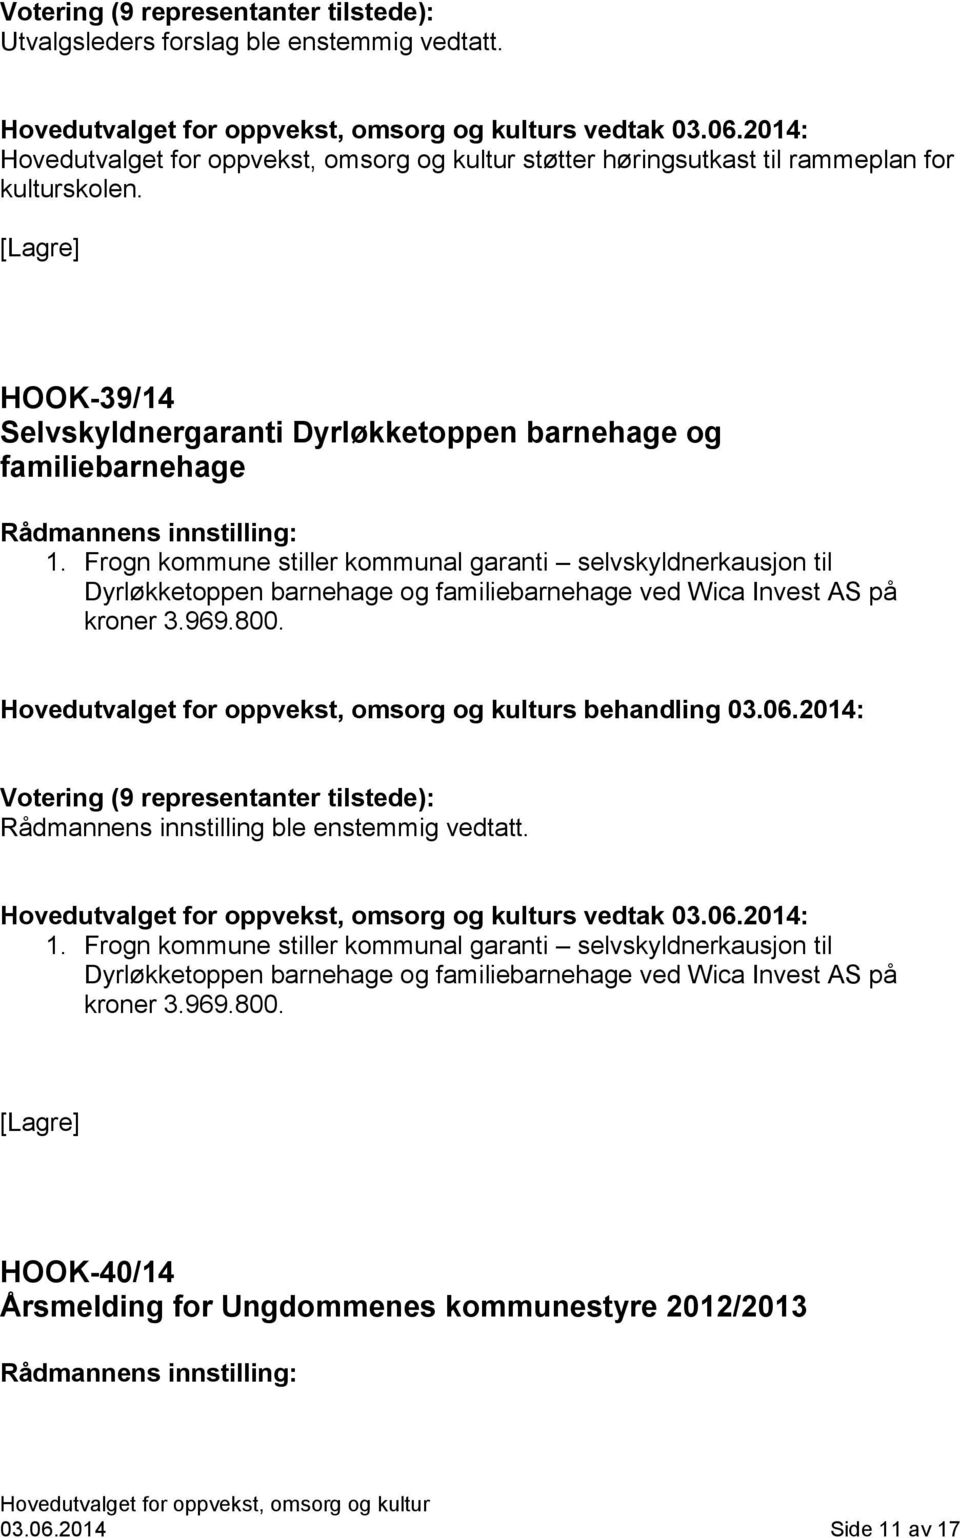 Frogn kommune stiller kommunal garanti selvskyldnerkausjon til Dyrløkketoppen barnehage og familiebarnehage ved Wica Invest AS på kroner 3.969.800. s behandling 03.06.